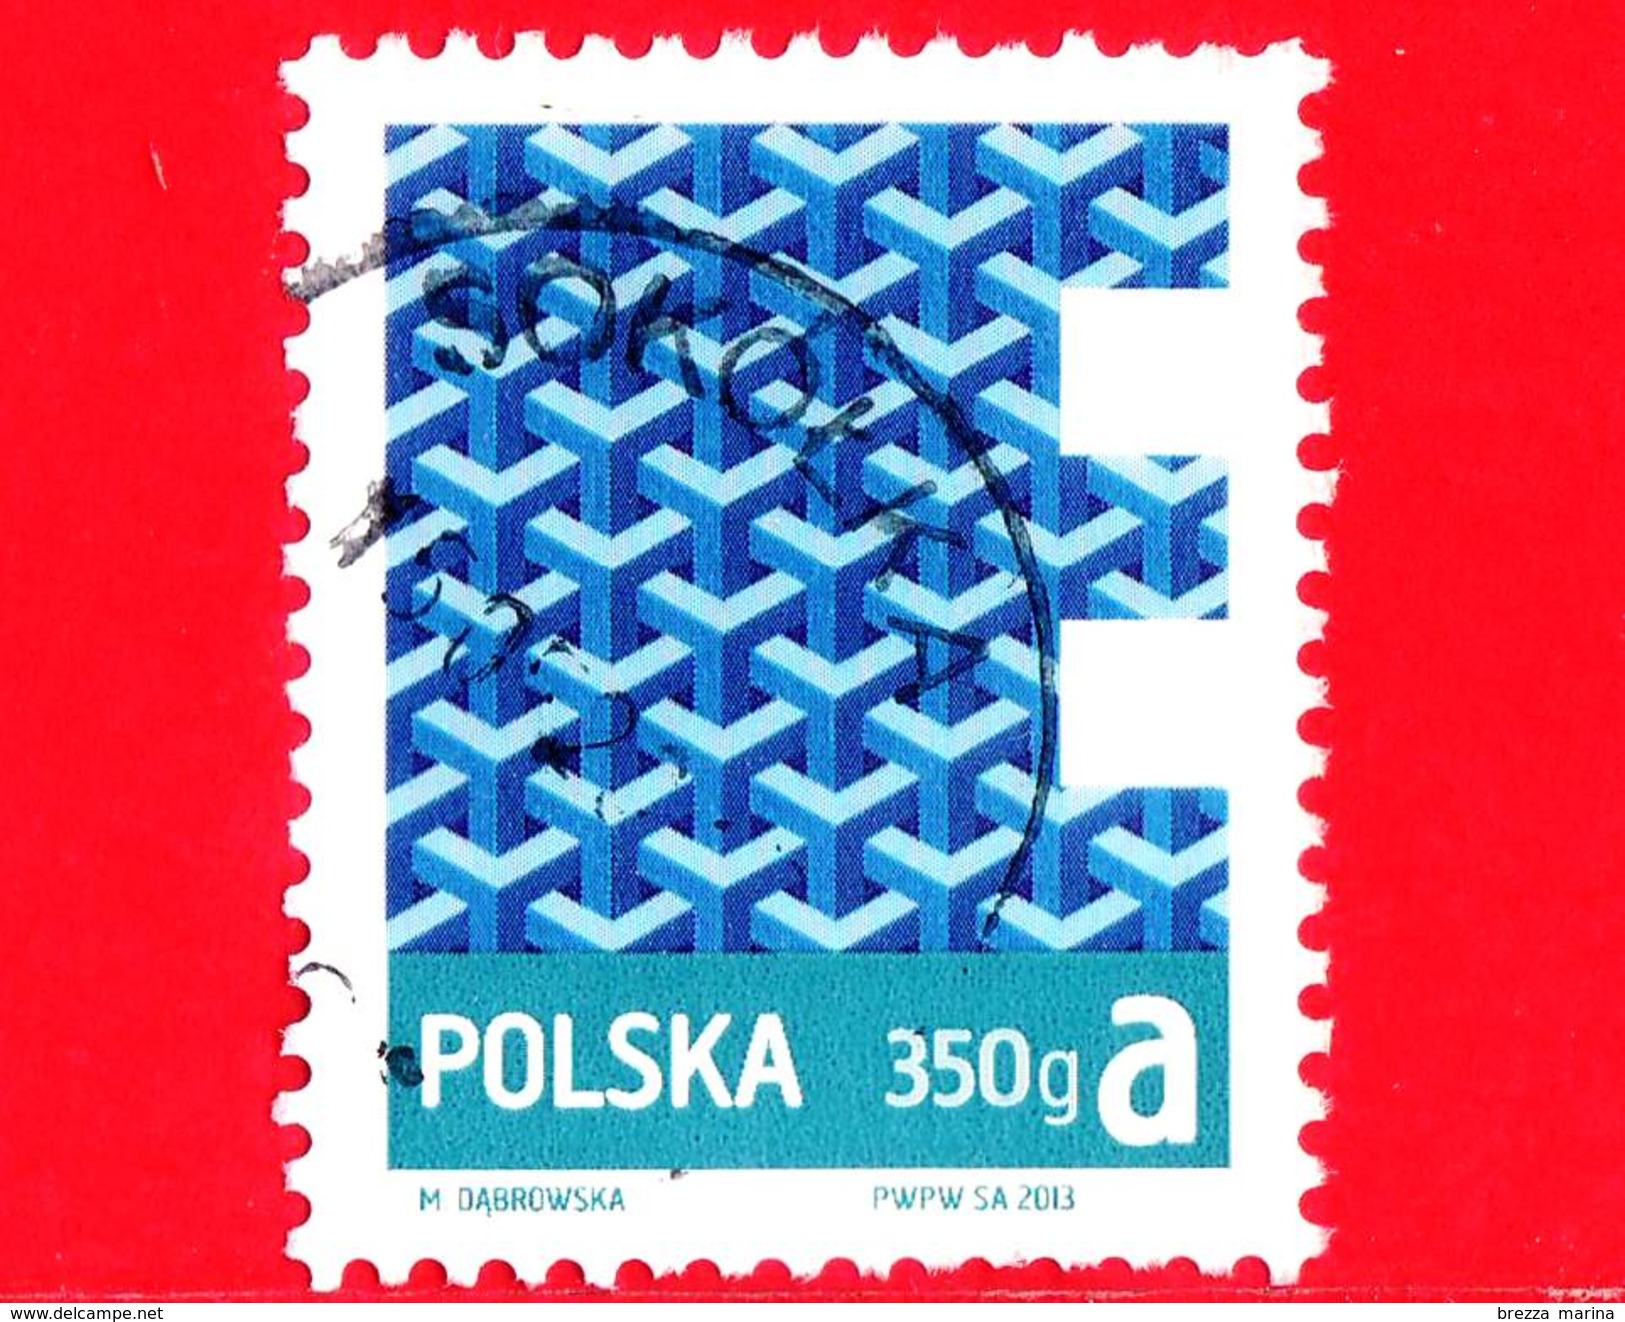 POLONIA - POLSKA - Usato - 2013 - Prioritaria - Znaczek Obiegowy Ekonomiczny I Priorytetowy - E 350g A - 1,60z&#x142; - Used Stamps